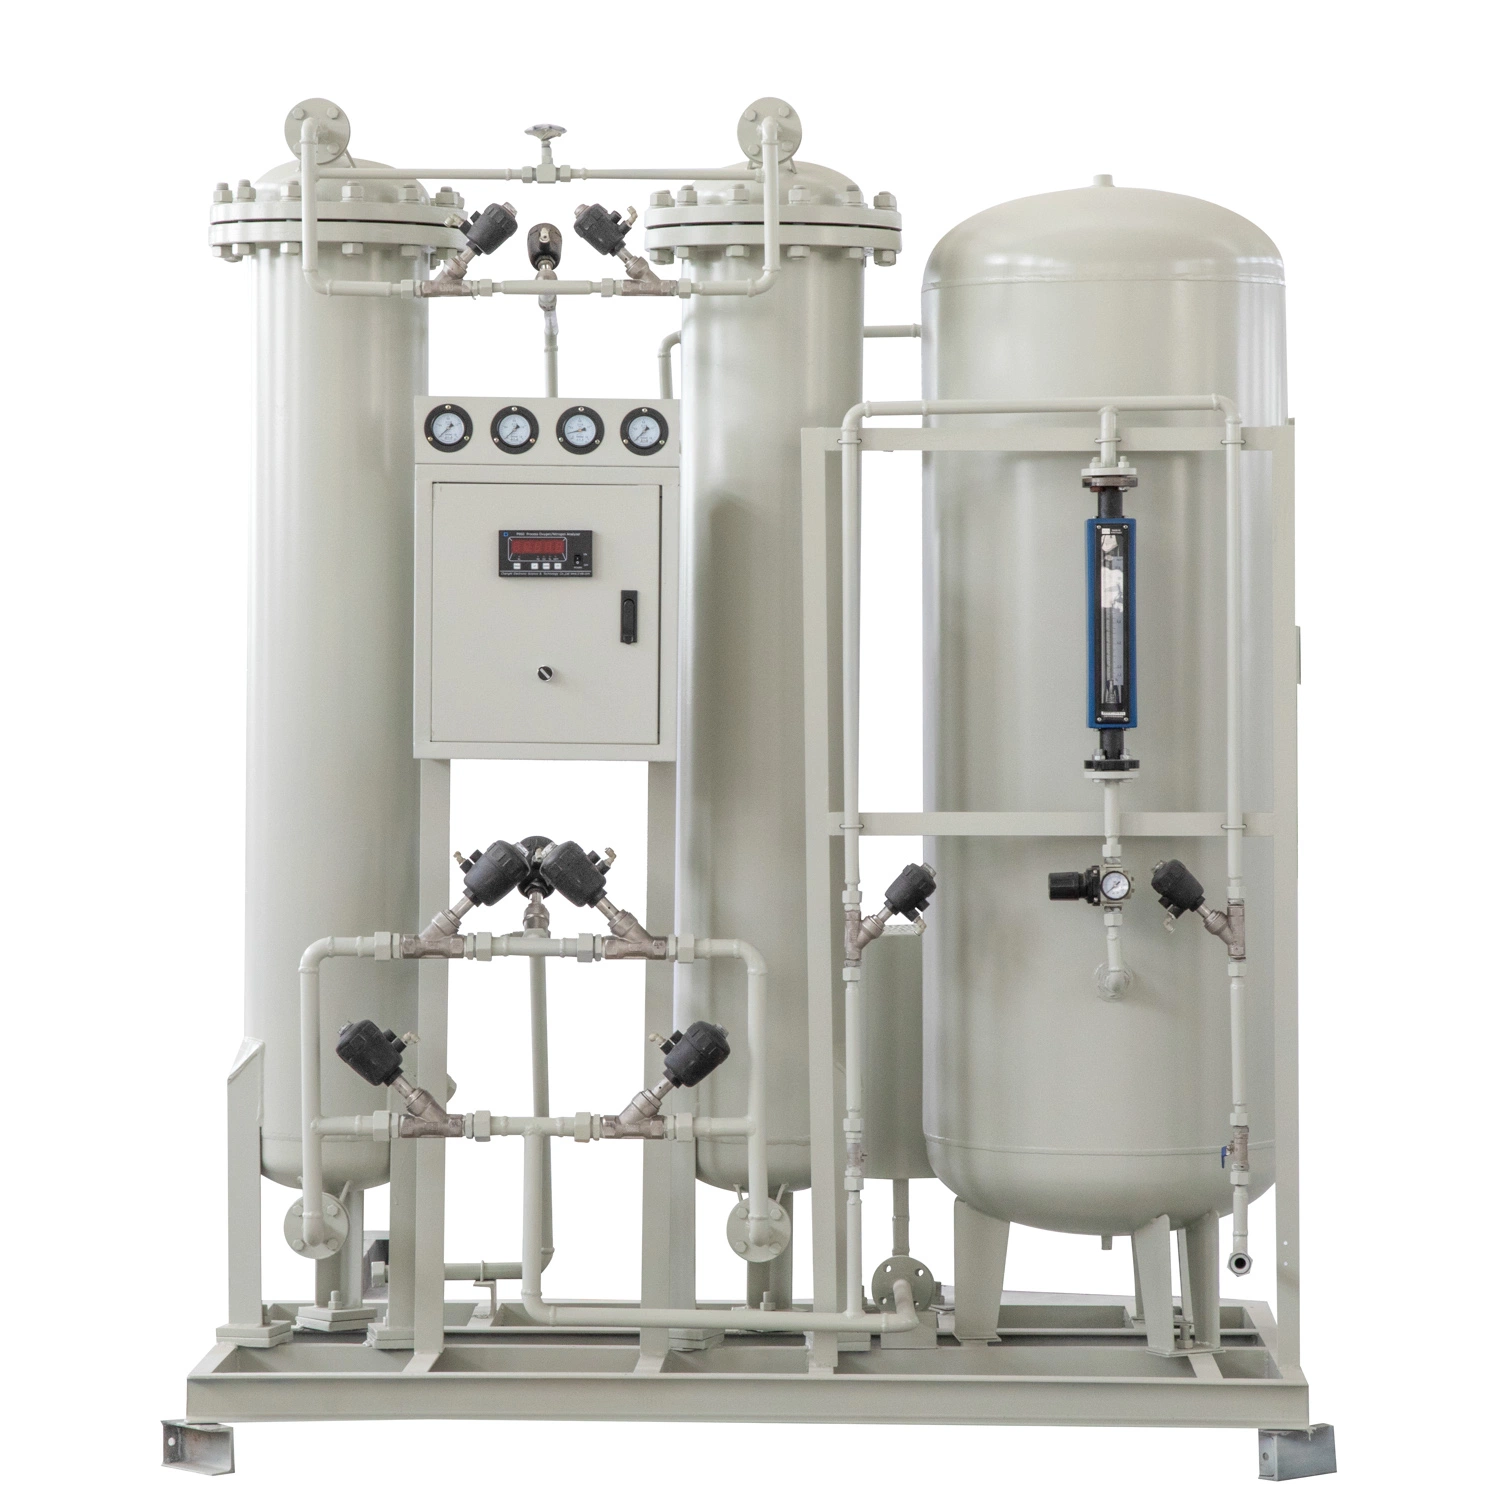 الأكسجين الامتزاز في وحدة فصل الهواء بواسطة وحدة فصل الهواء في محطة التبريد والأكسجين معدات الجيل